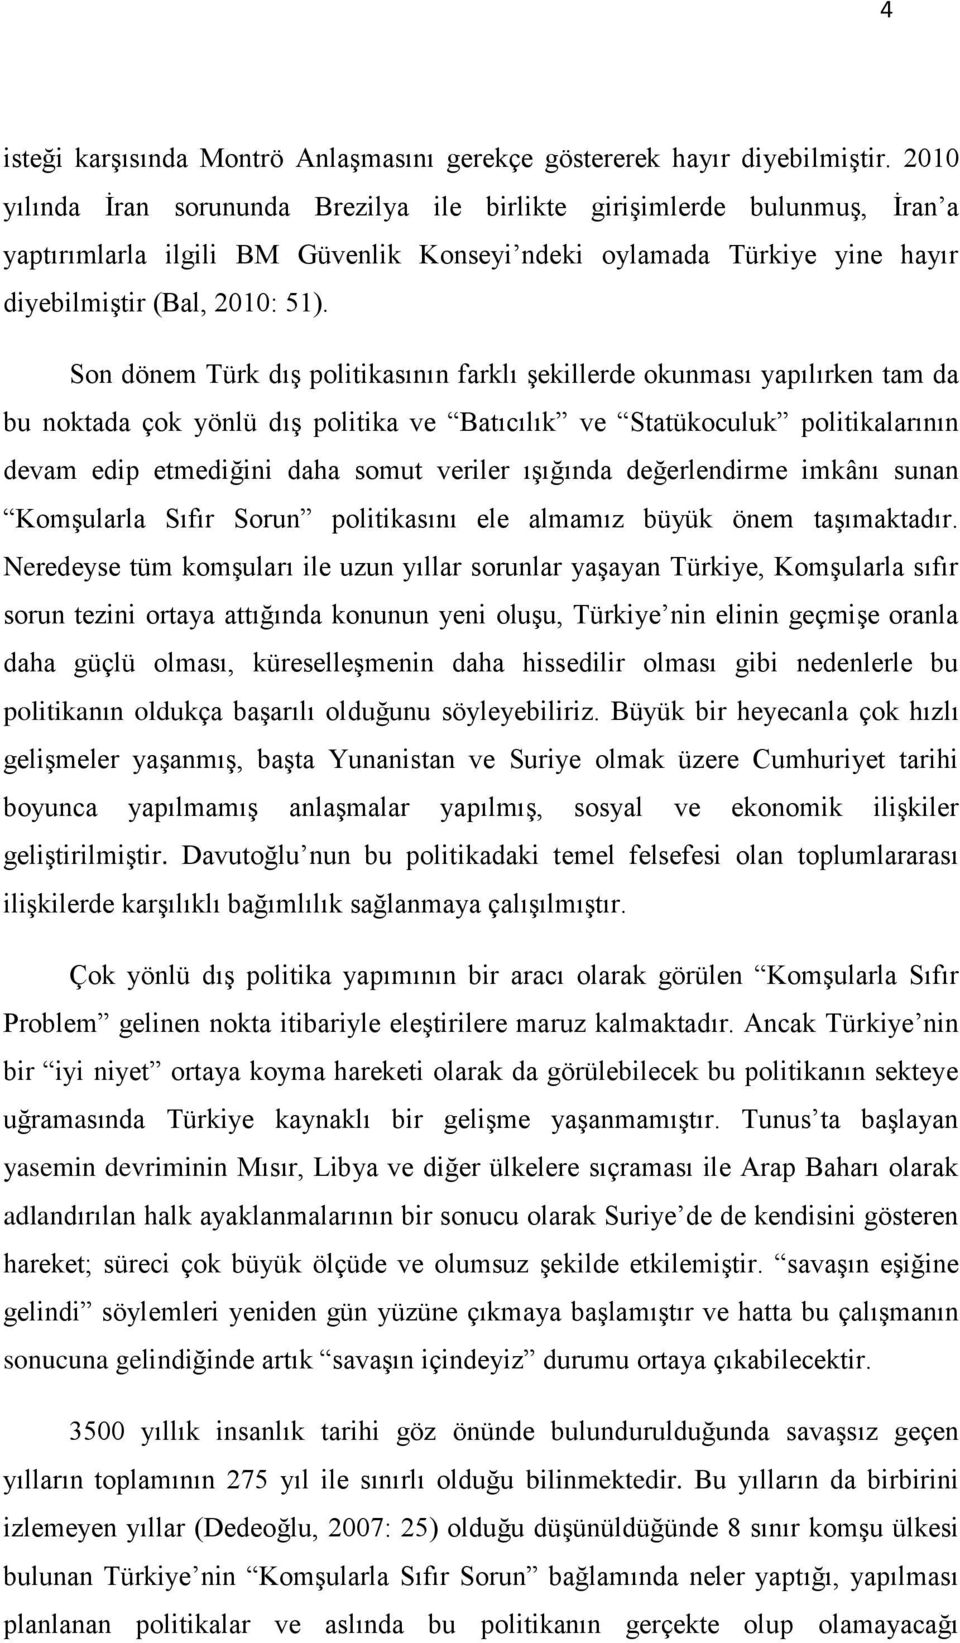 Son dönem Türk dıģ politikasının farklı Ģekillerde okunması yapılırken tam da bu noktada çok yönlü dıģ politika ve Batıcılık ve Statükoculuk politikalarının devam edip etmediğini daha somut veriler